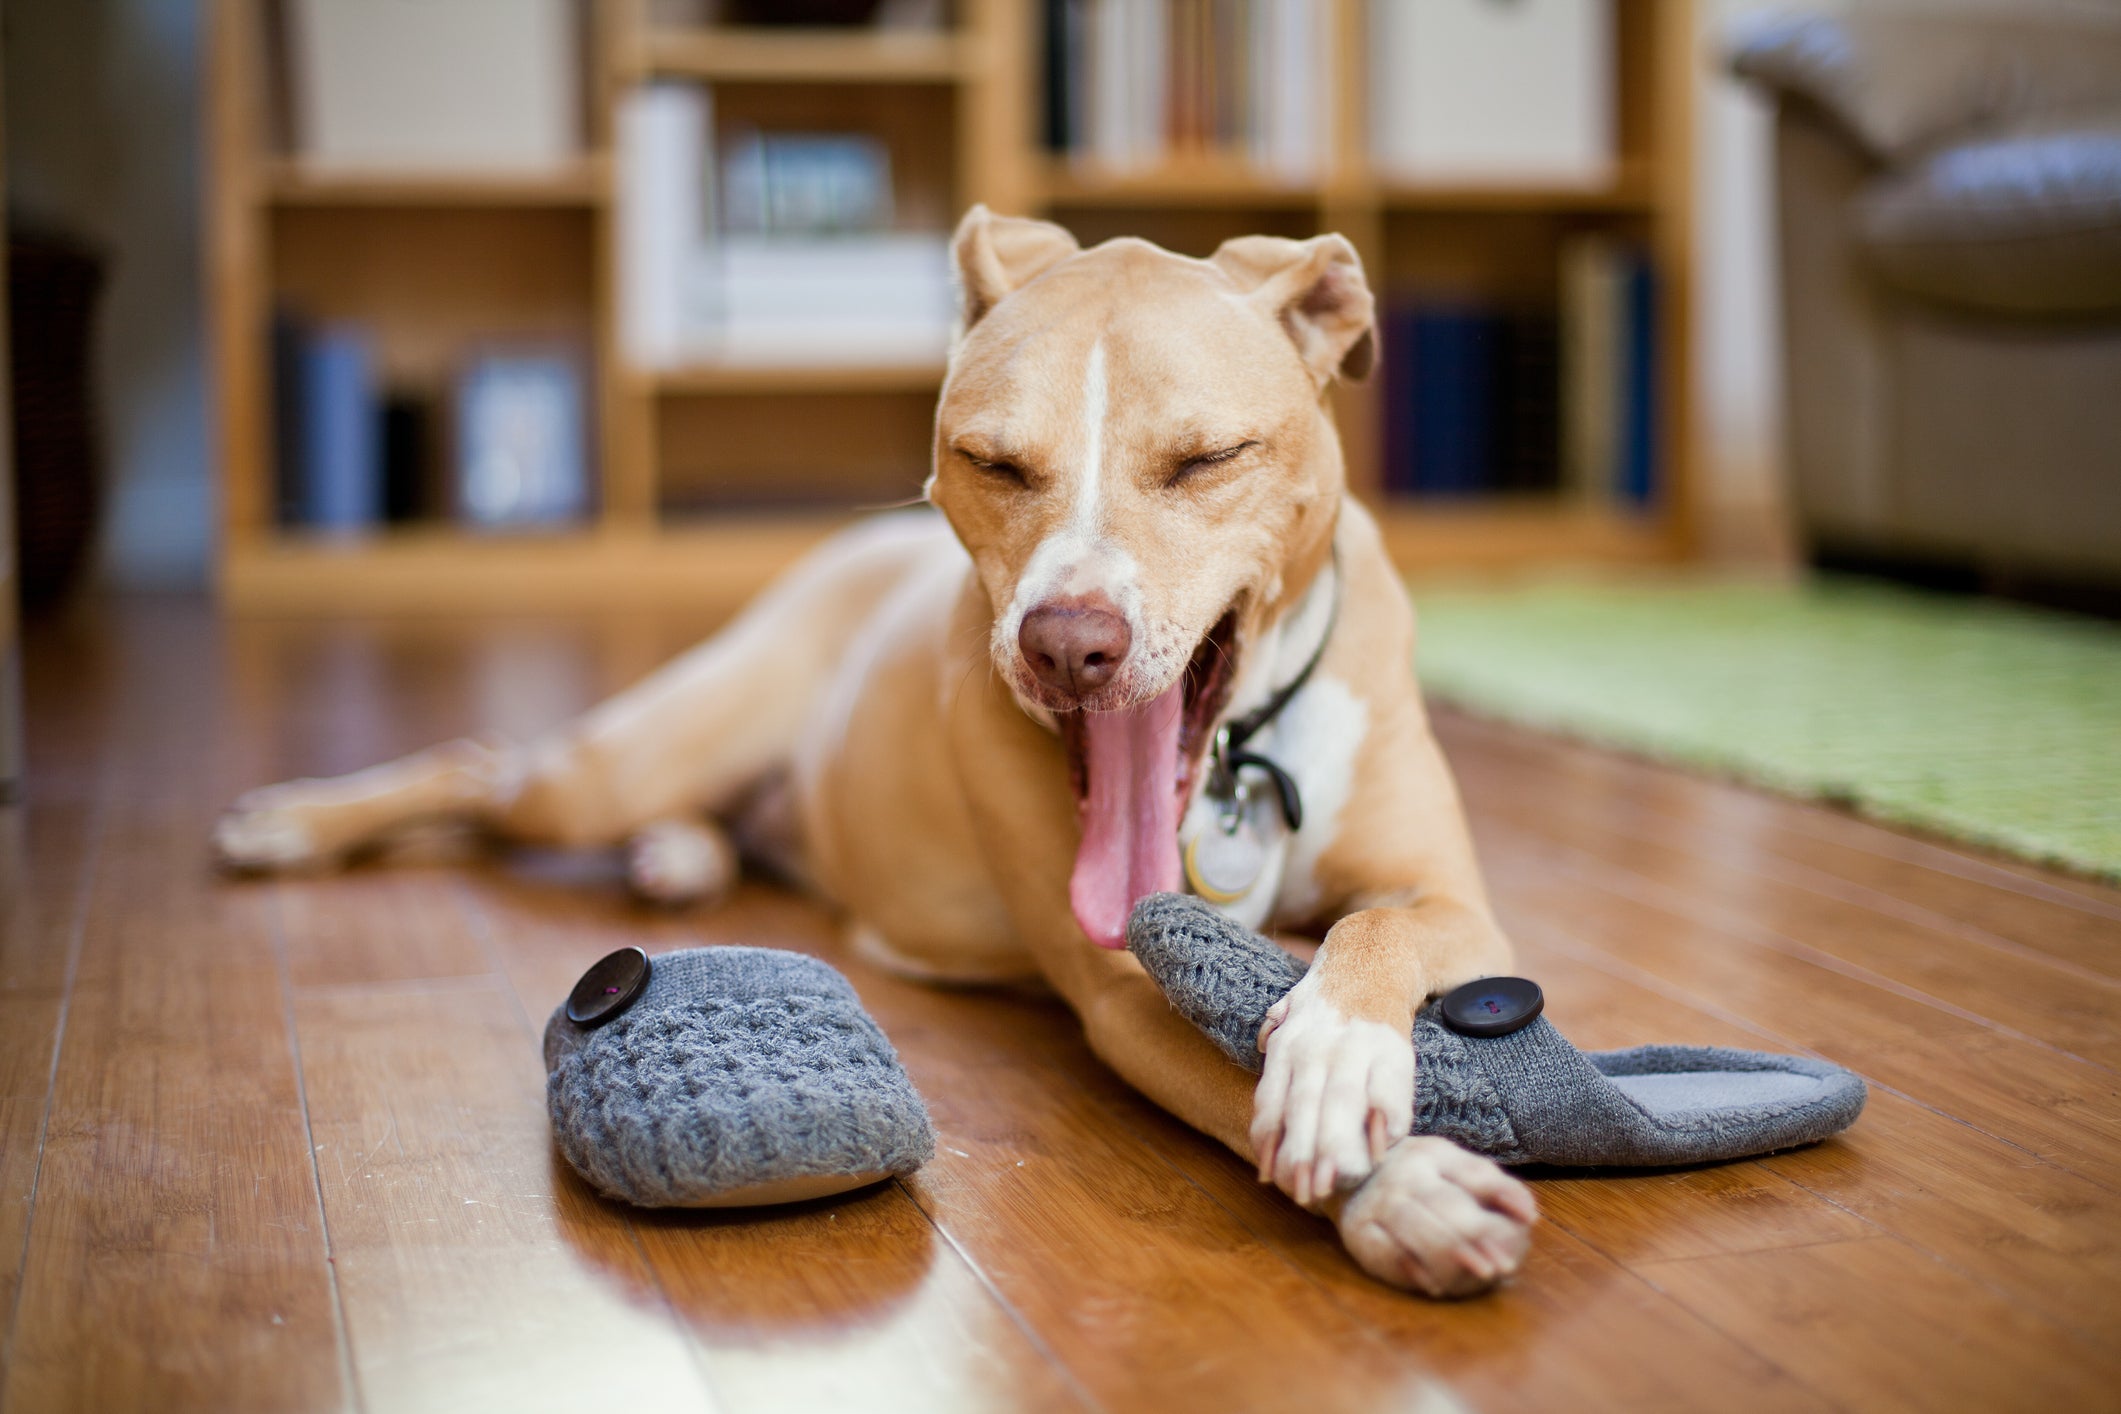 O comportamento do cachorro de deitar em cima do chinelo pode revelar ansiedade de separação